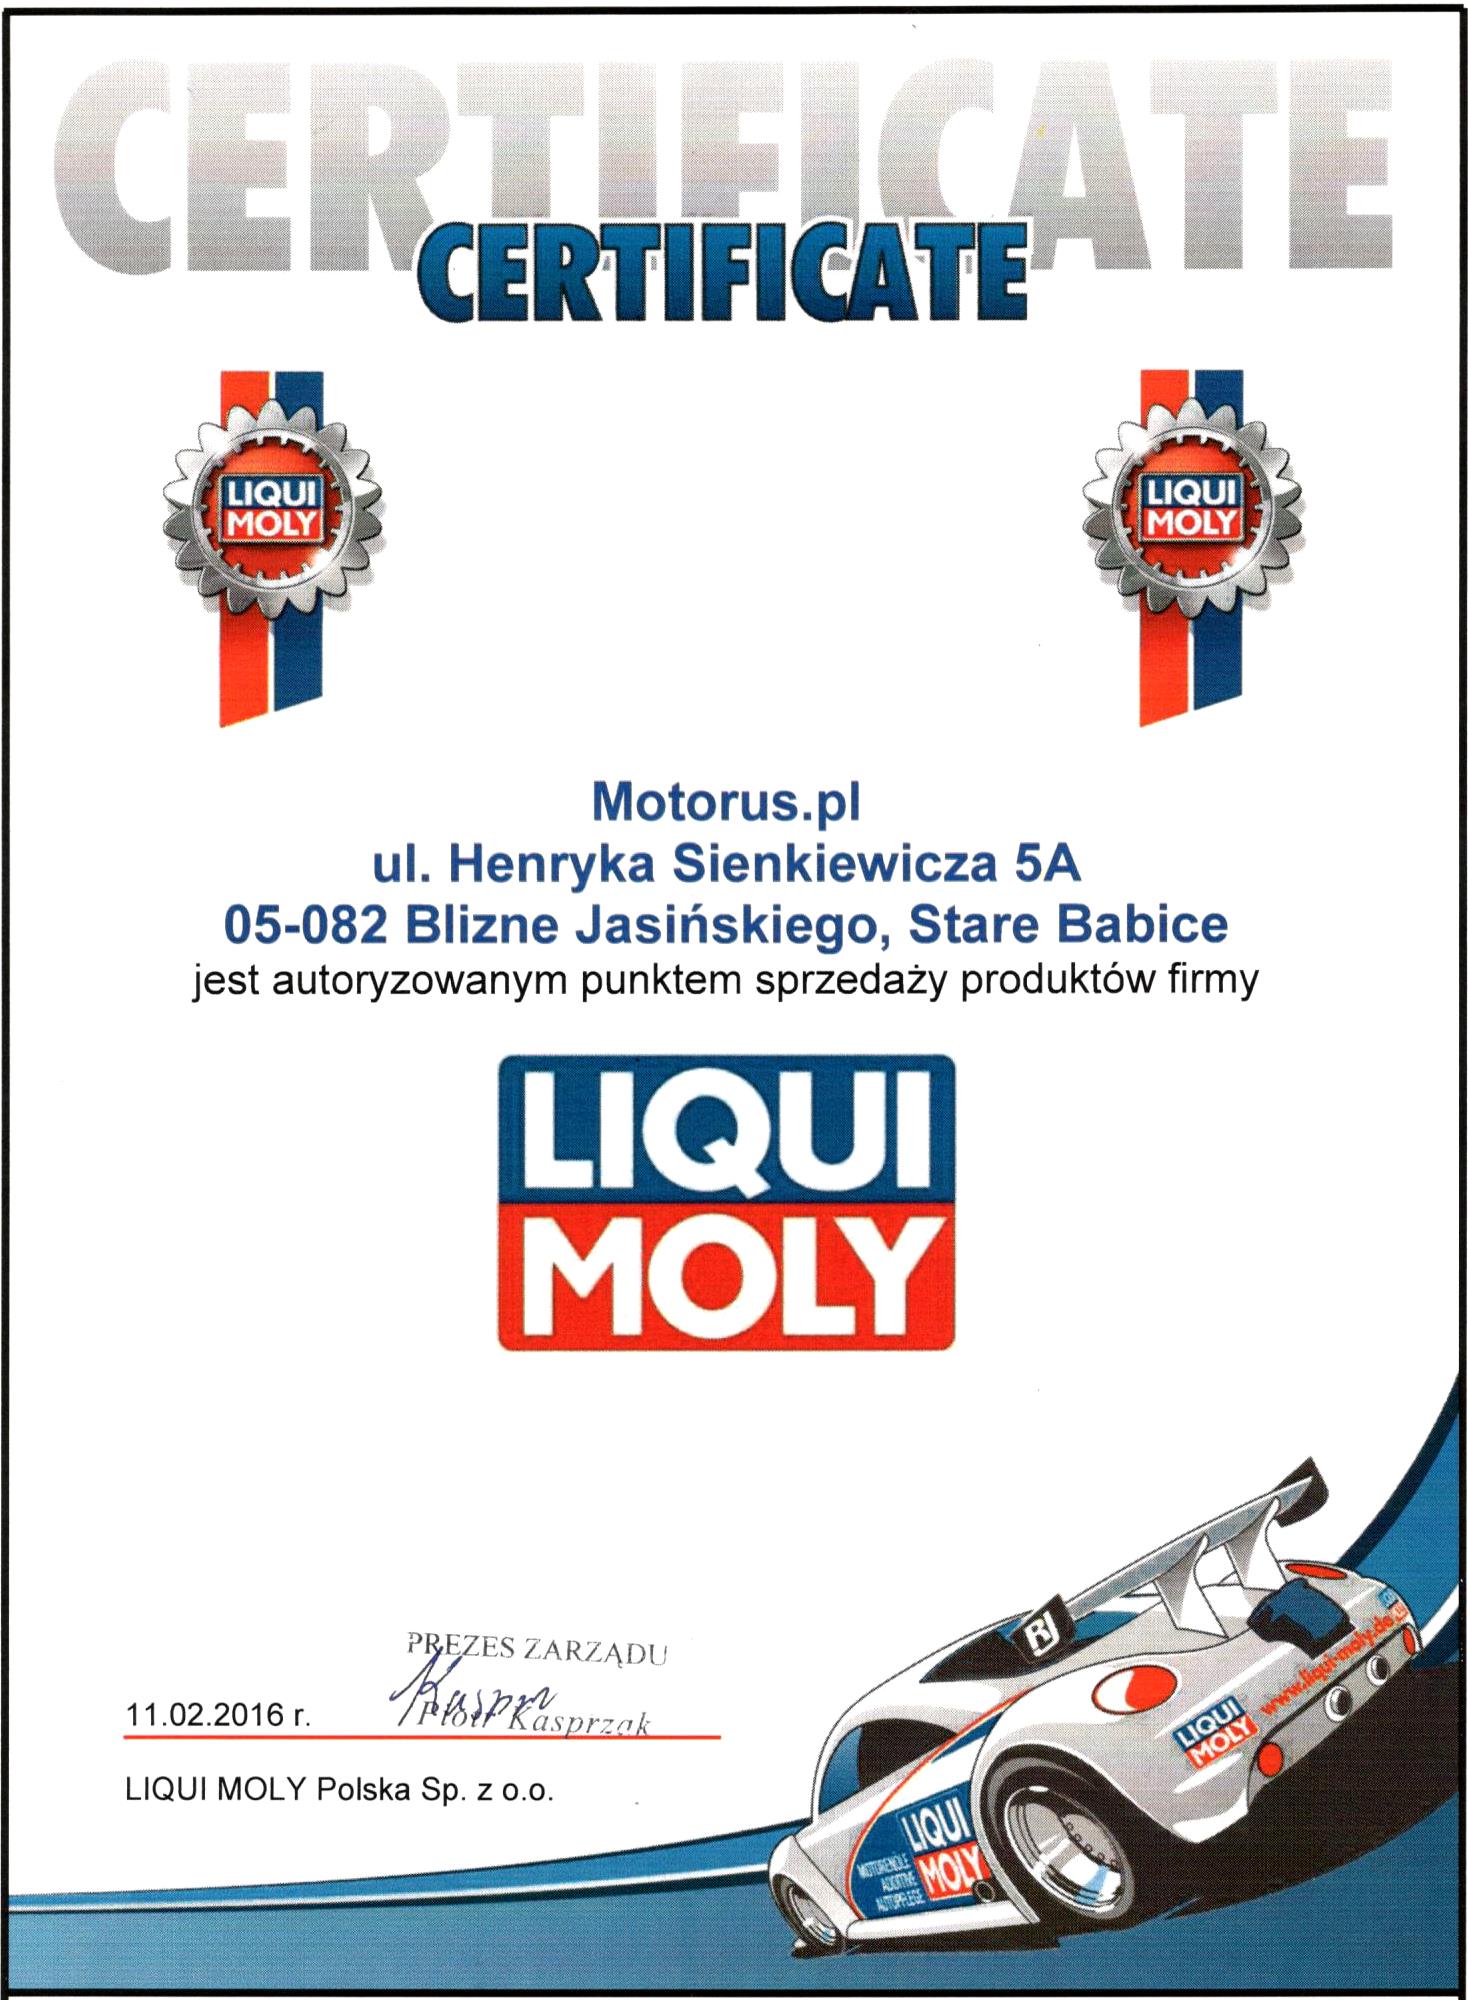 MOTORUS.PL certyfikowany sprzedawca marki LIQUI MOLY w Polsce